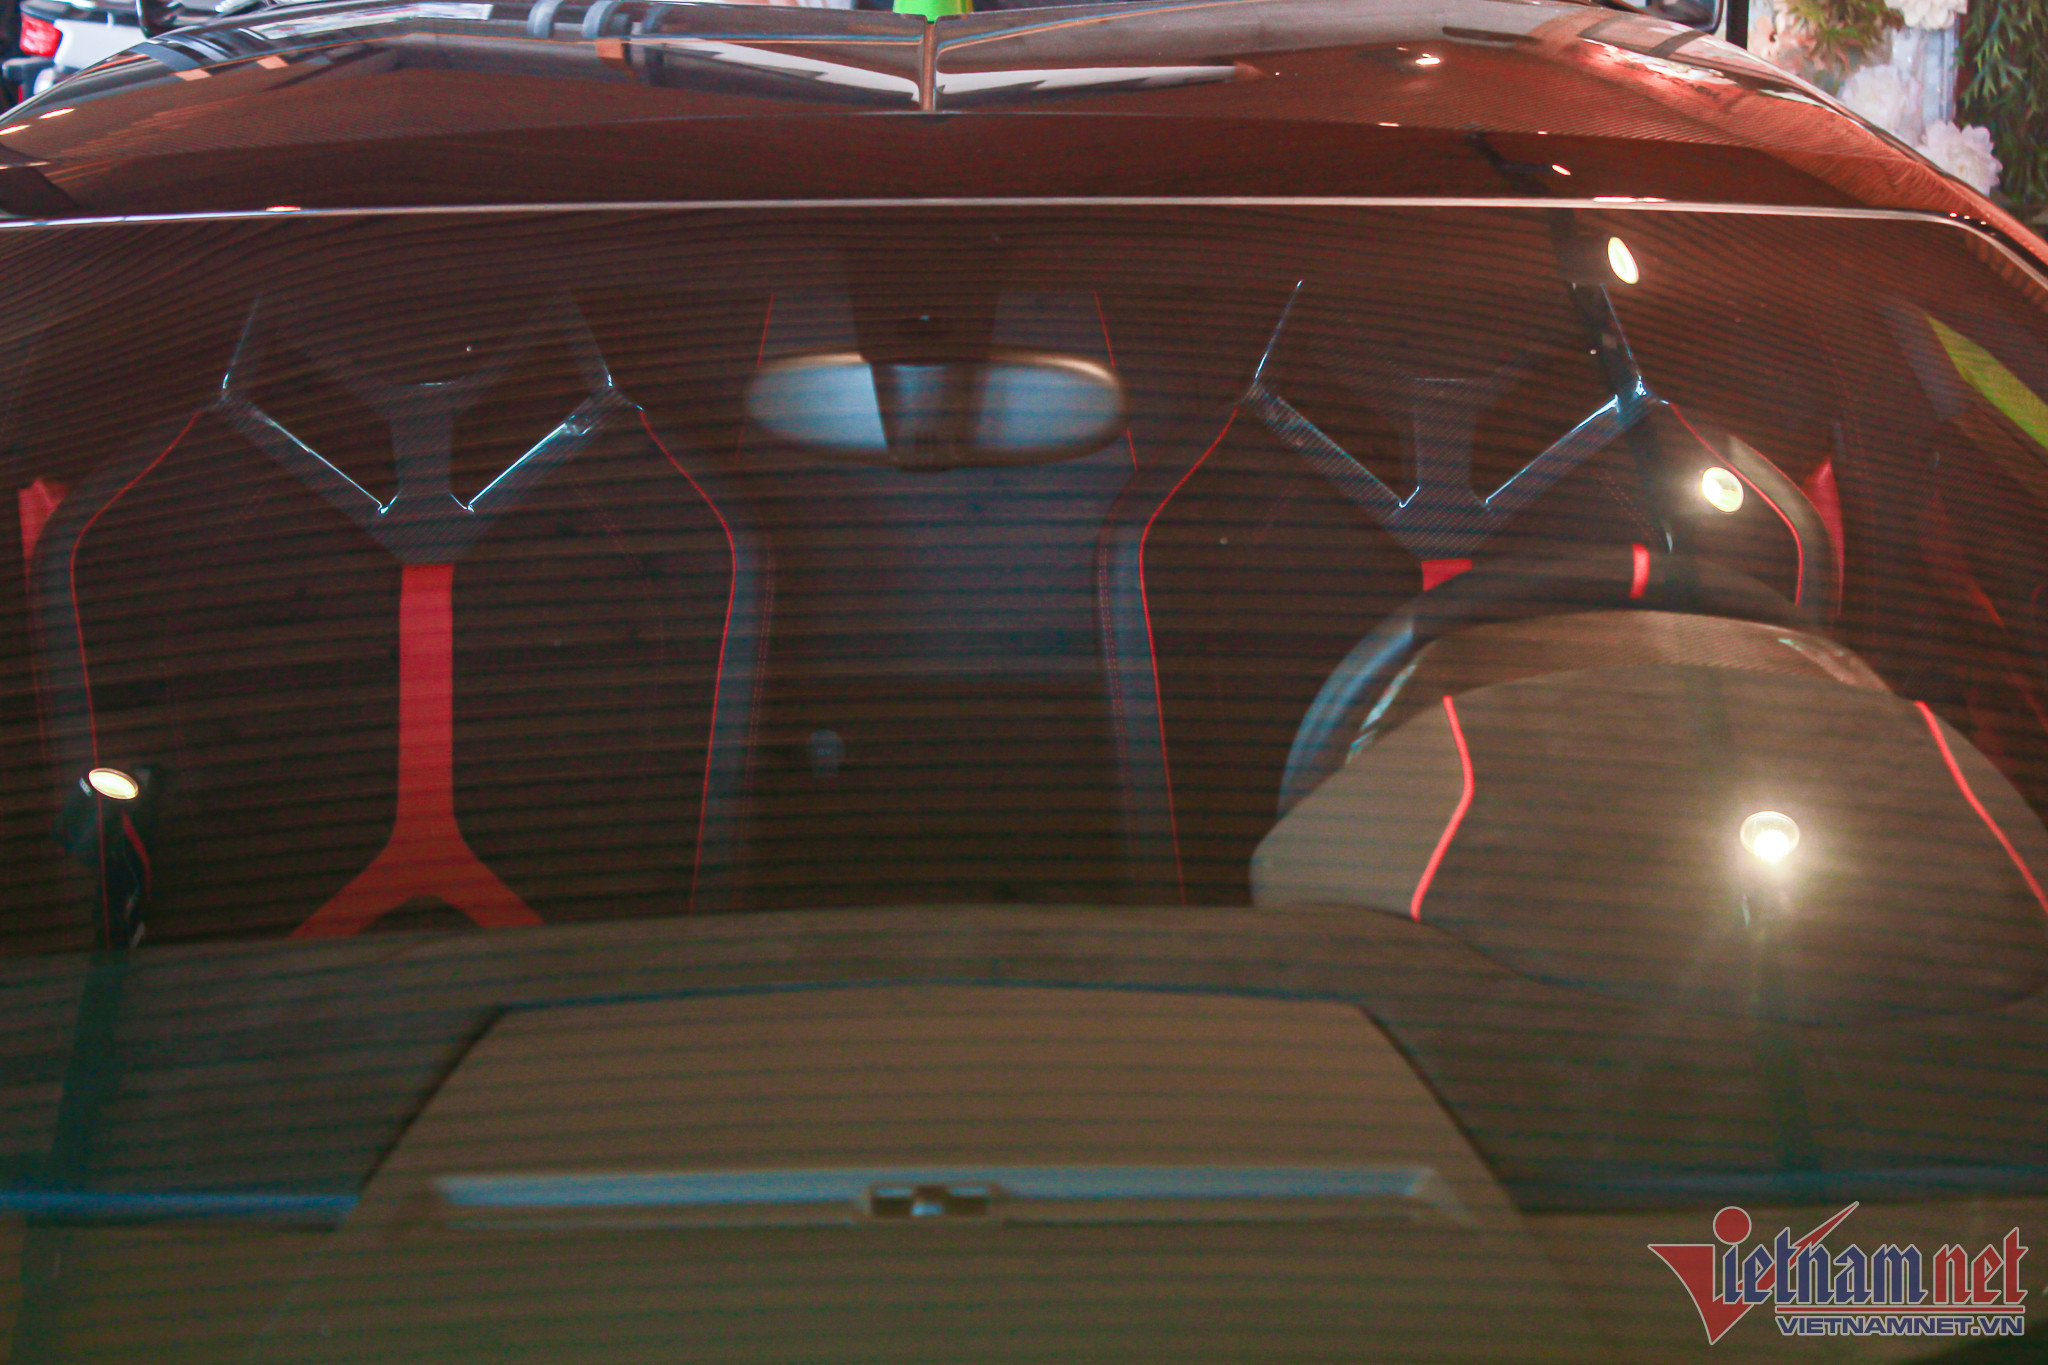 Đại gia Đà Nẵng sắm siêu xe Lamborghini Aventador mui trần giá lăn bánh 50 tỷ